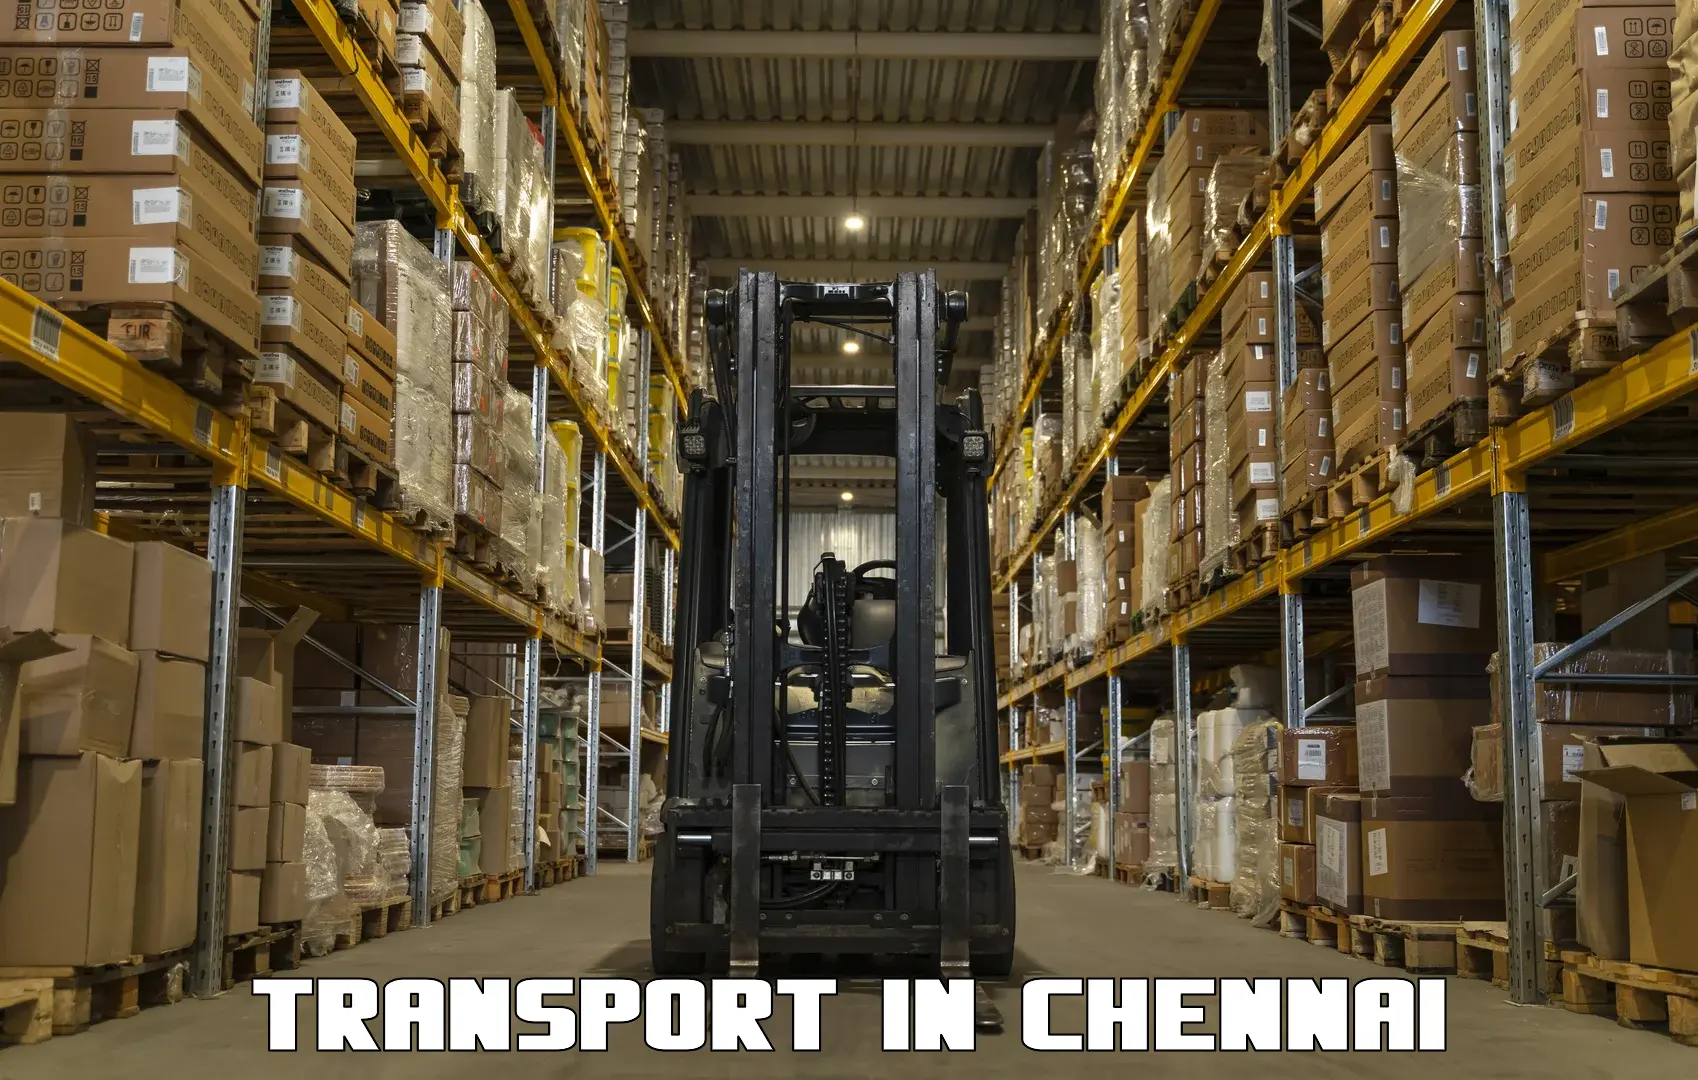 Intercity transport in Chennai